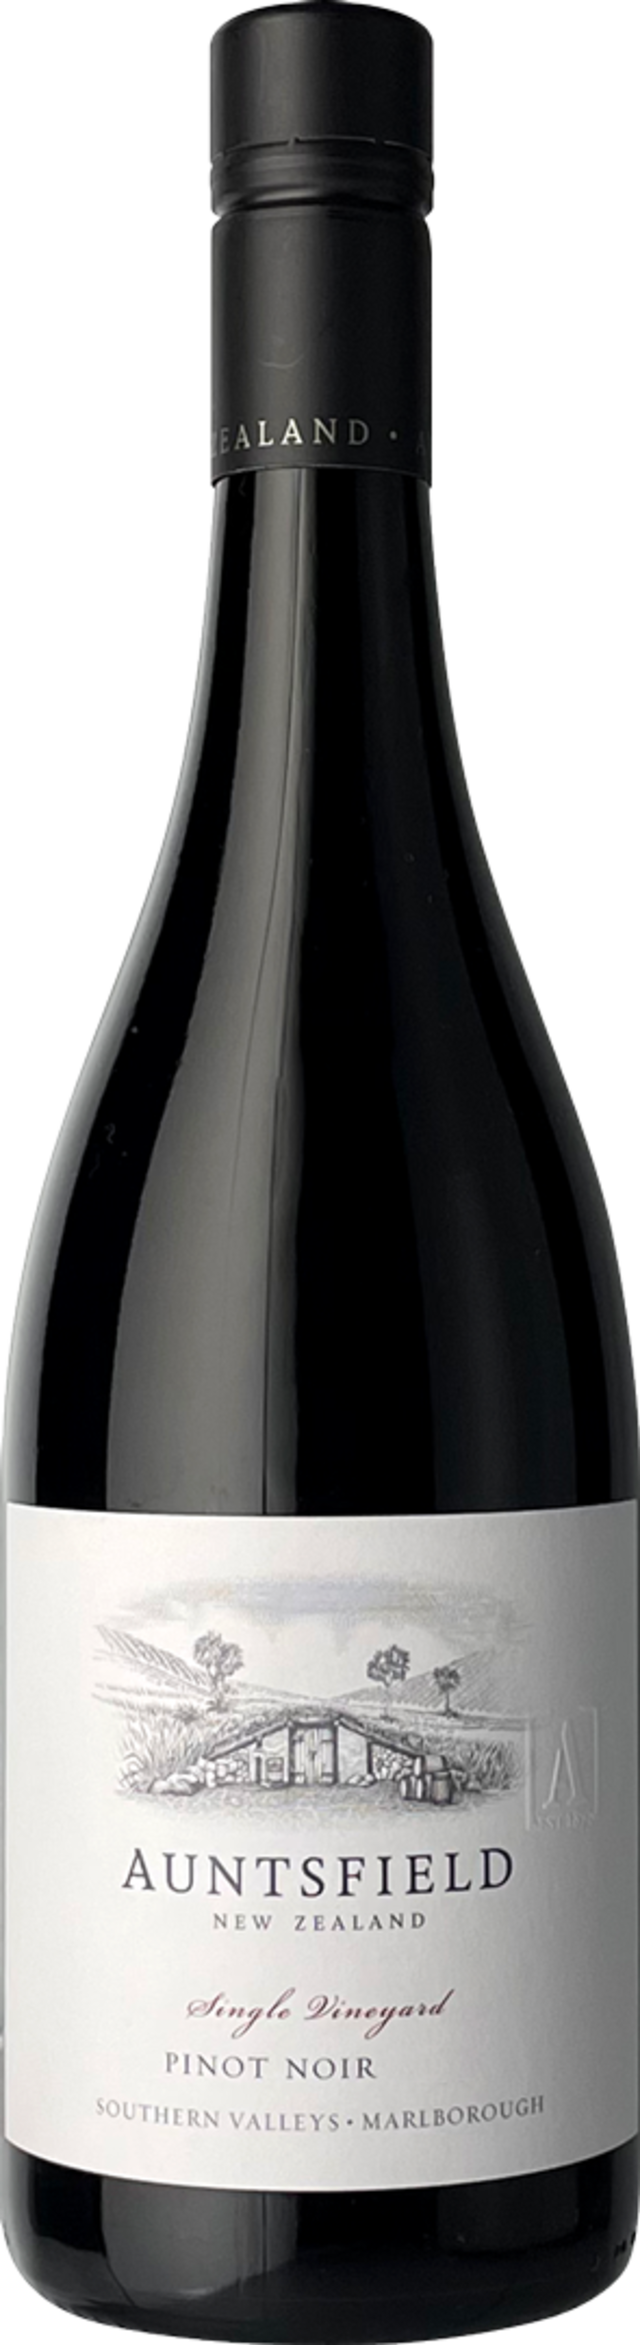 2020 ｱﾝﾂﾌｨｰﾙﾄﾞ　ｼﾝｸﾞﾙ・ｳﾞｨﾝﾔｰﾄﾞ　ﾋﾟﾉ・ﾉﾜｰﾙ｜2020 Auntsfield Single Vineyard Pinot Noir